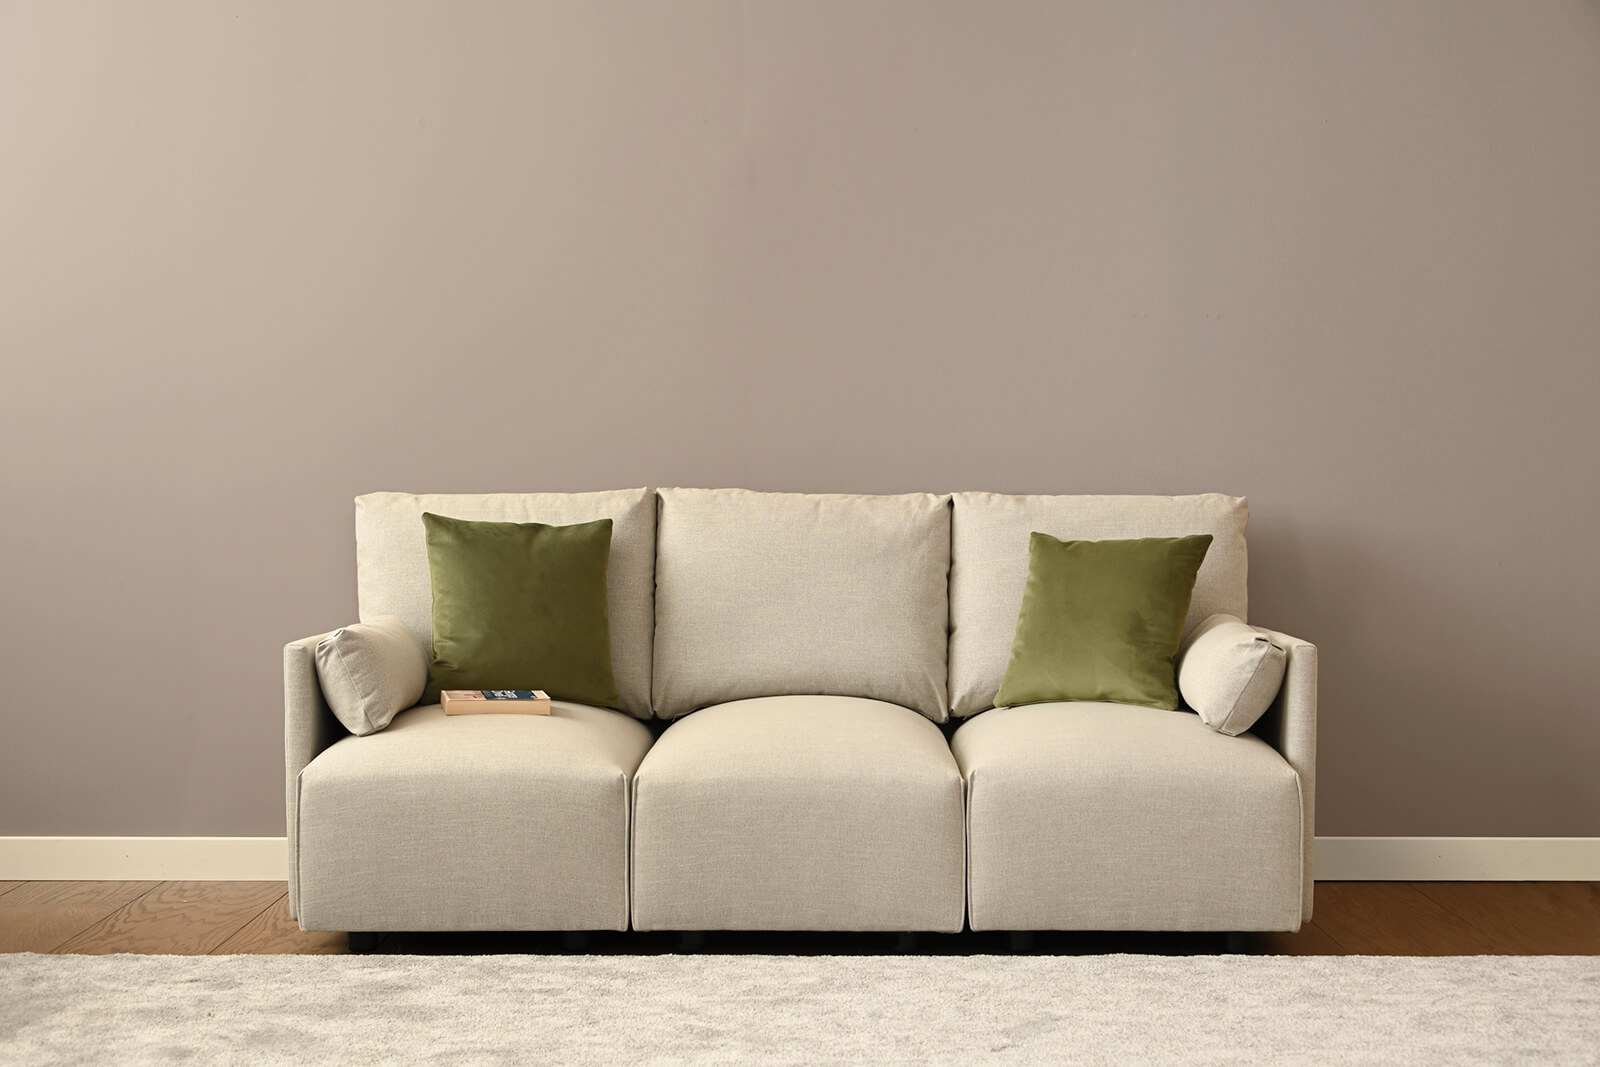 HB04-medium-sofa-front-coconut-lifestyle